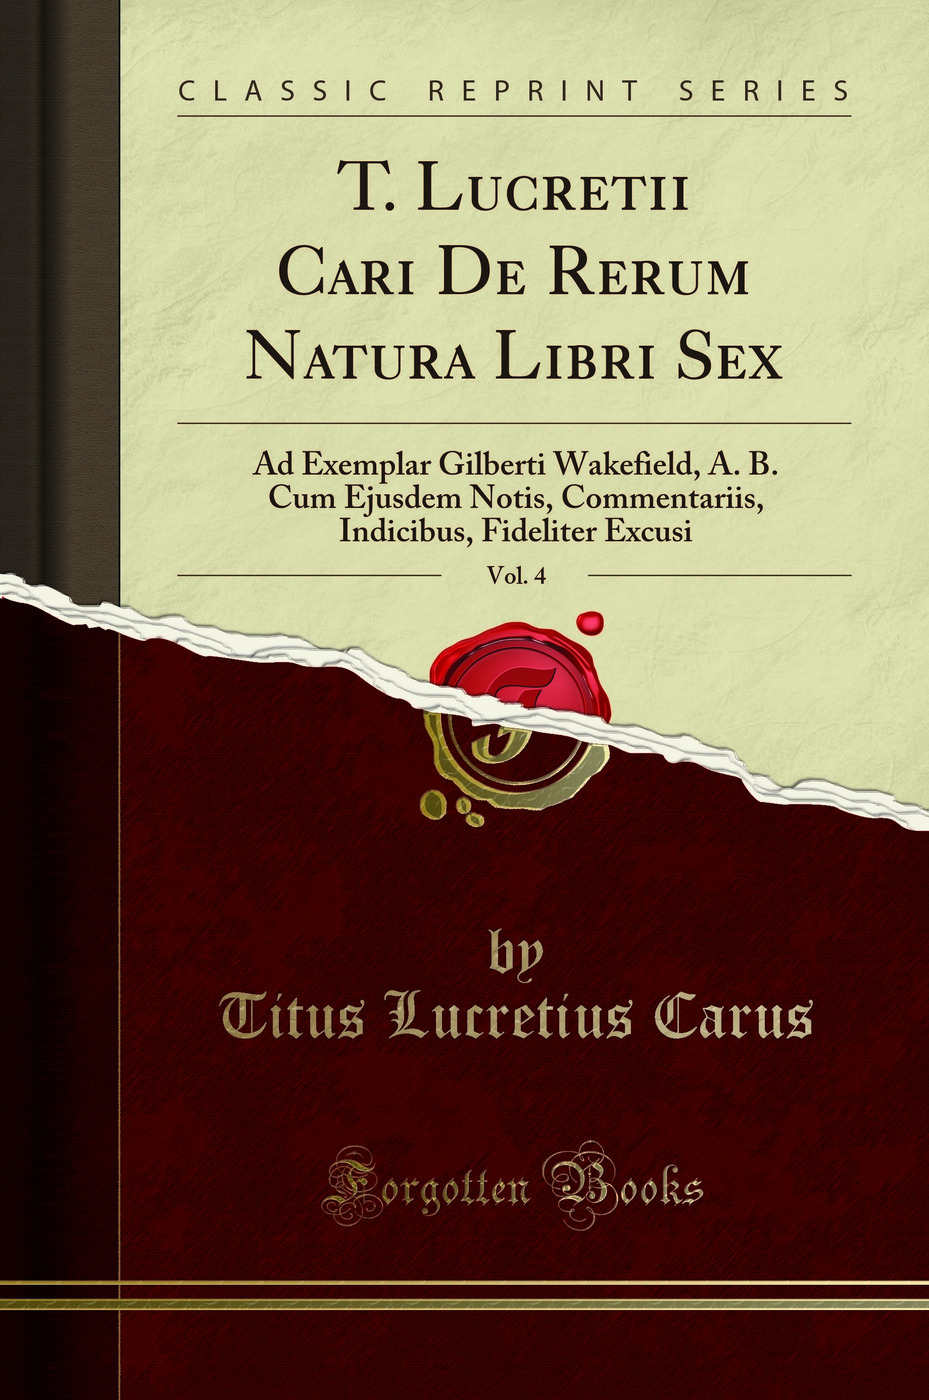 T. Lucretii Cari De Rerum Natura Libri Sex, Vol. 4 (Classic Reprint) - Titus Lucretius Carus